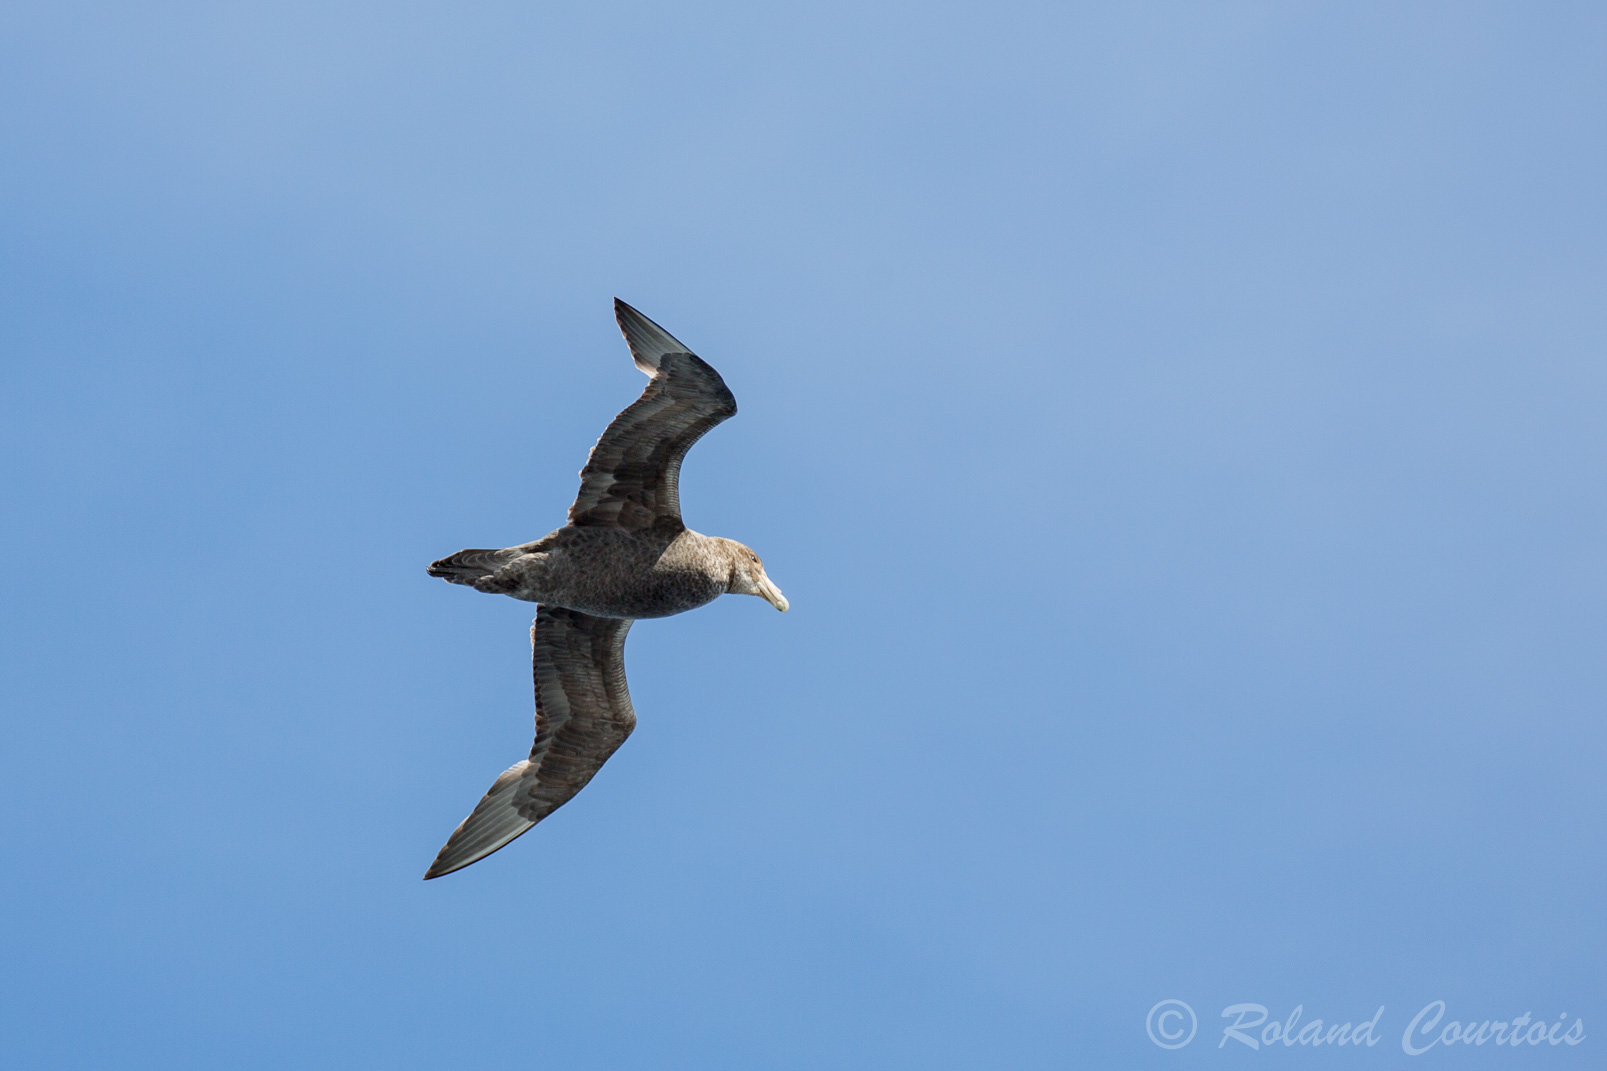 Contrairement à l'albatros, le pétrel géant a un vol battu et moins plané.